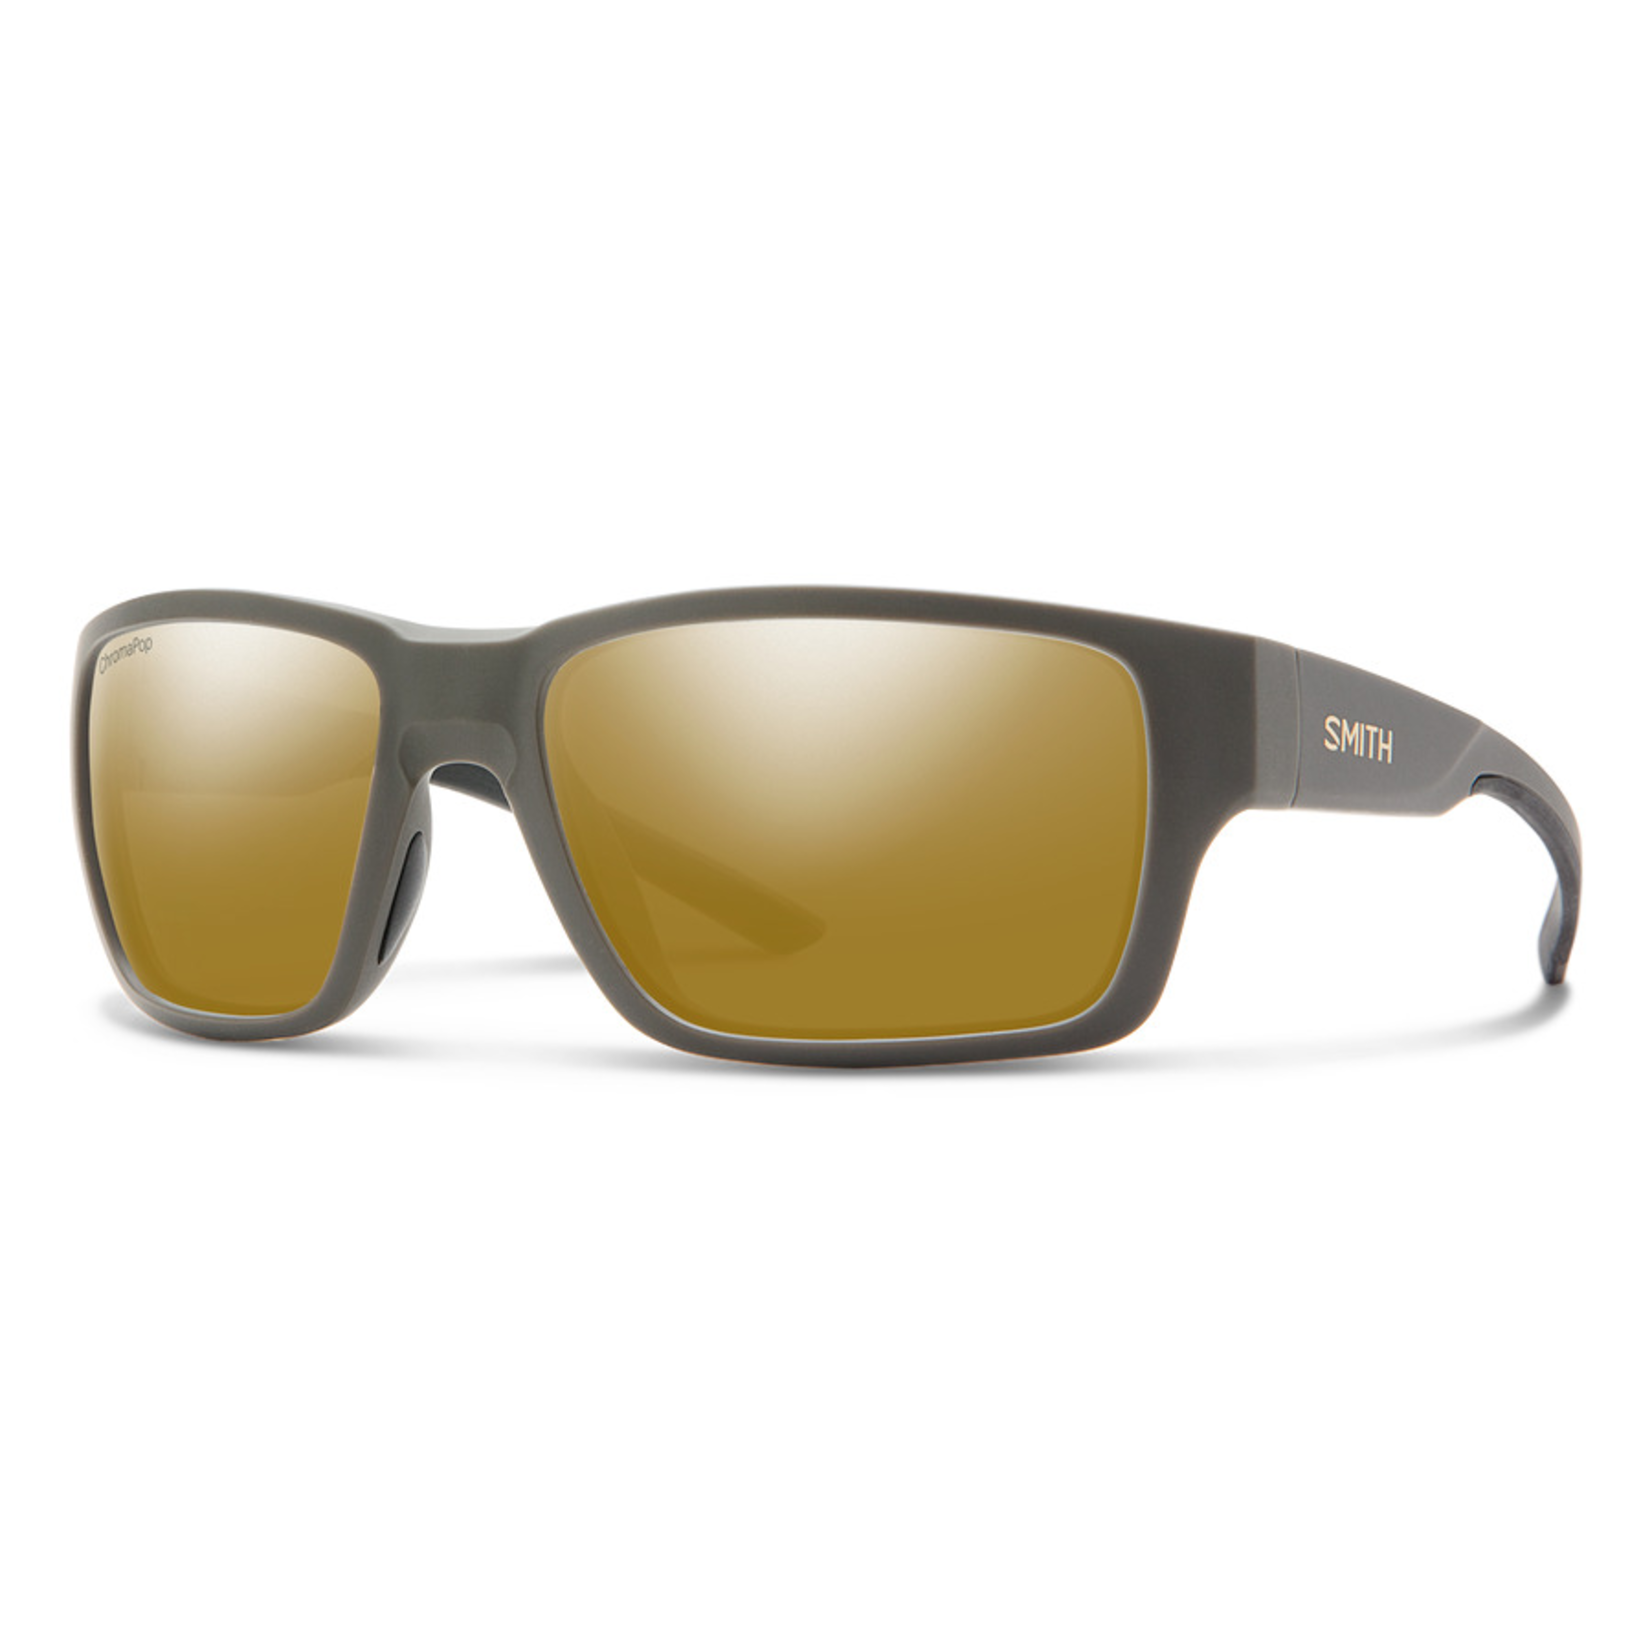 Smith Optics Smith Outback Sunglasses Matte Gravy + ChromaPop Polarized Bronze Mirror Lens